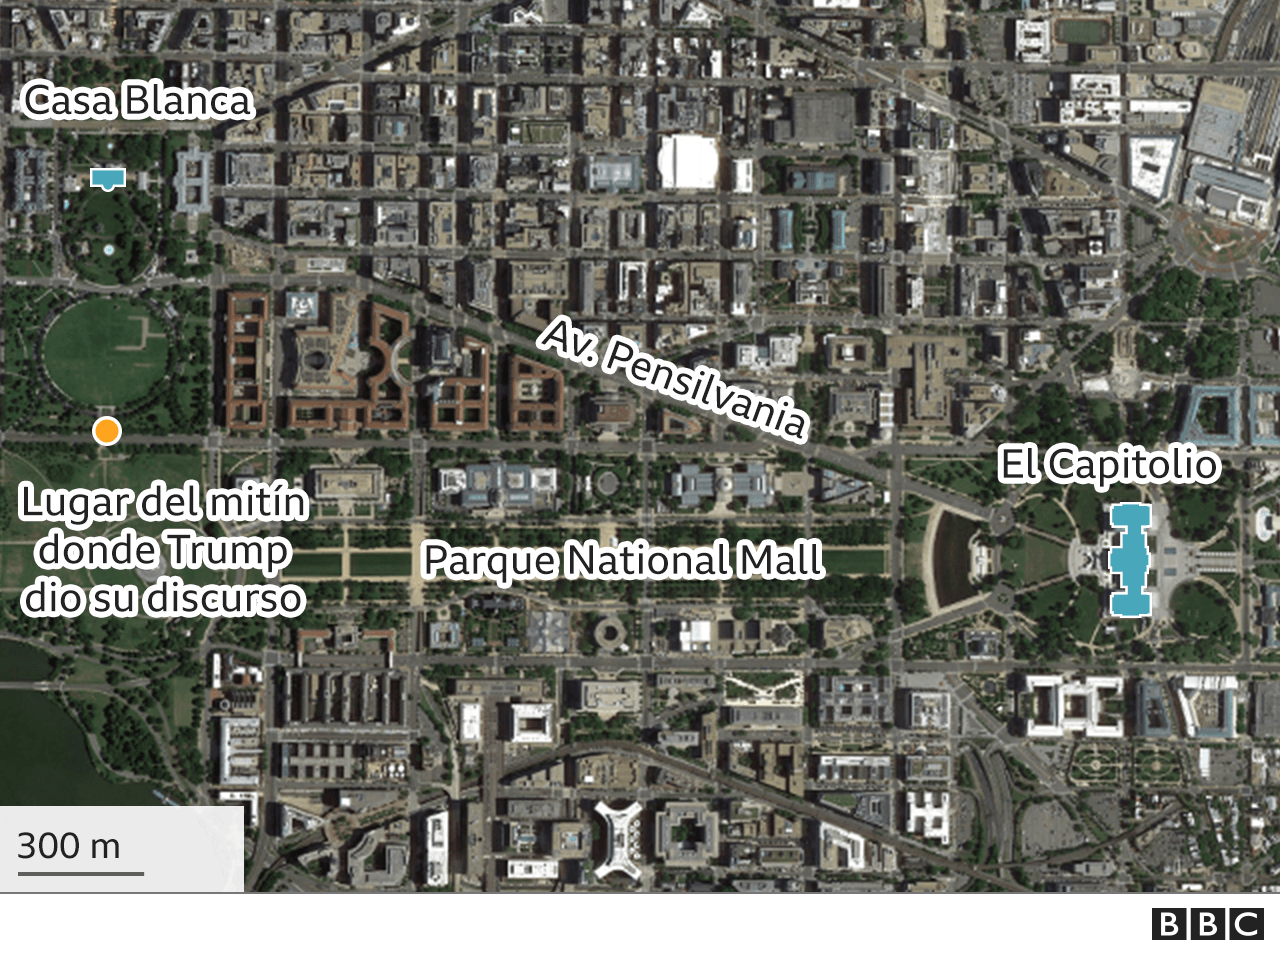 Mapa que muestra la distancia entre la Casa Blanca y el Capitolio.